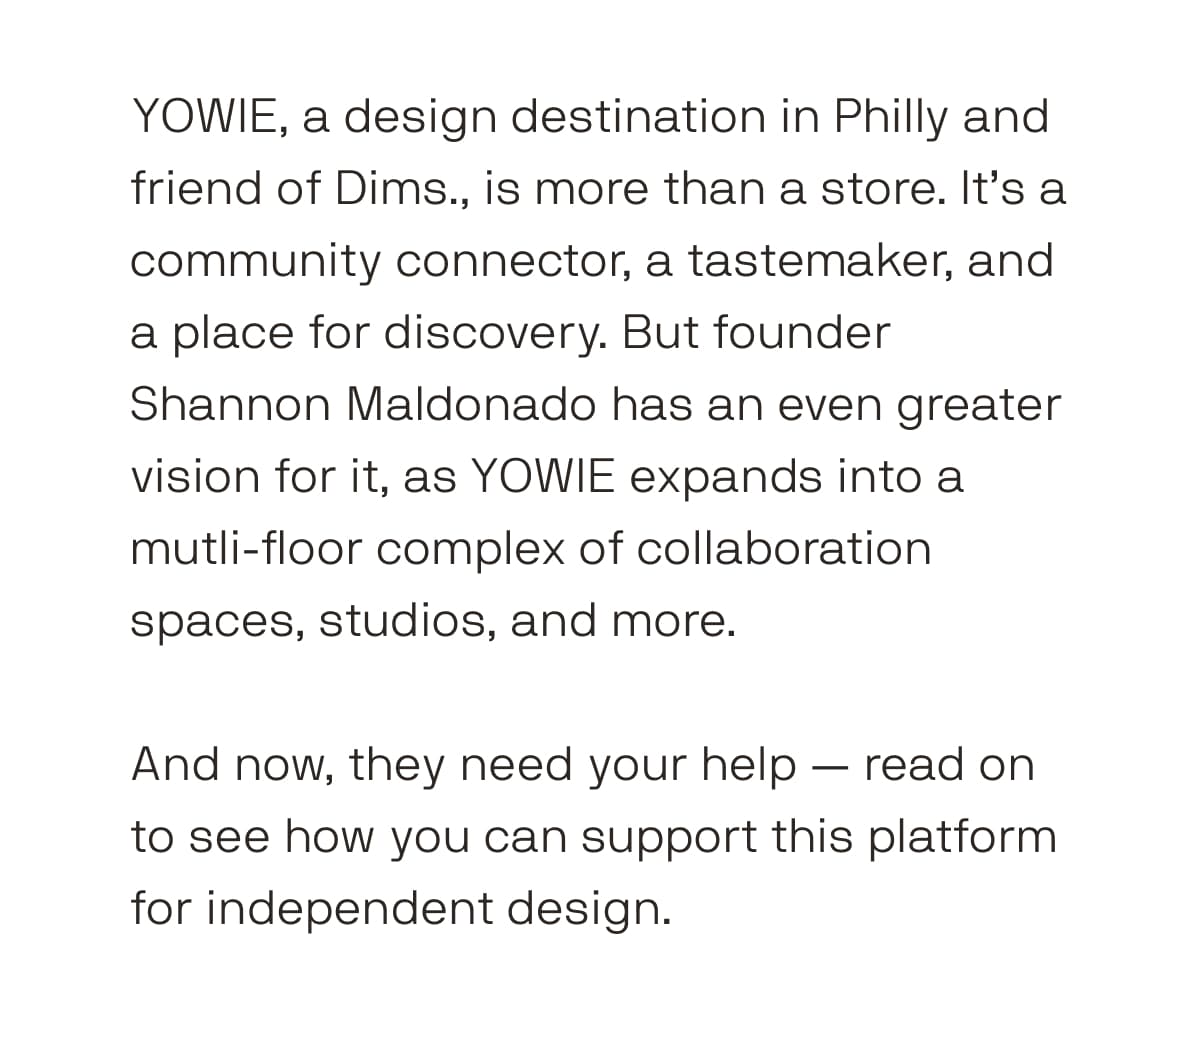 Help YOWIE meet their crowdfunding goal